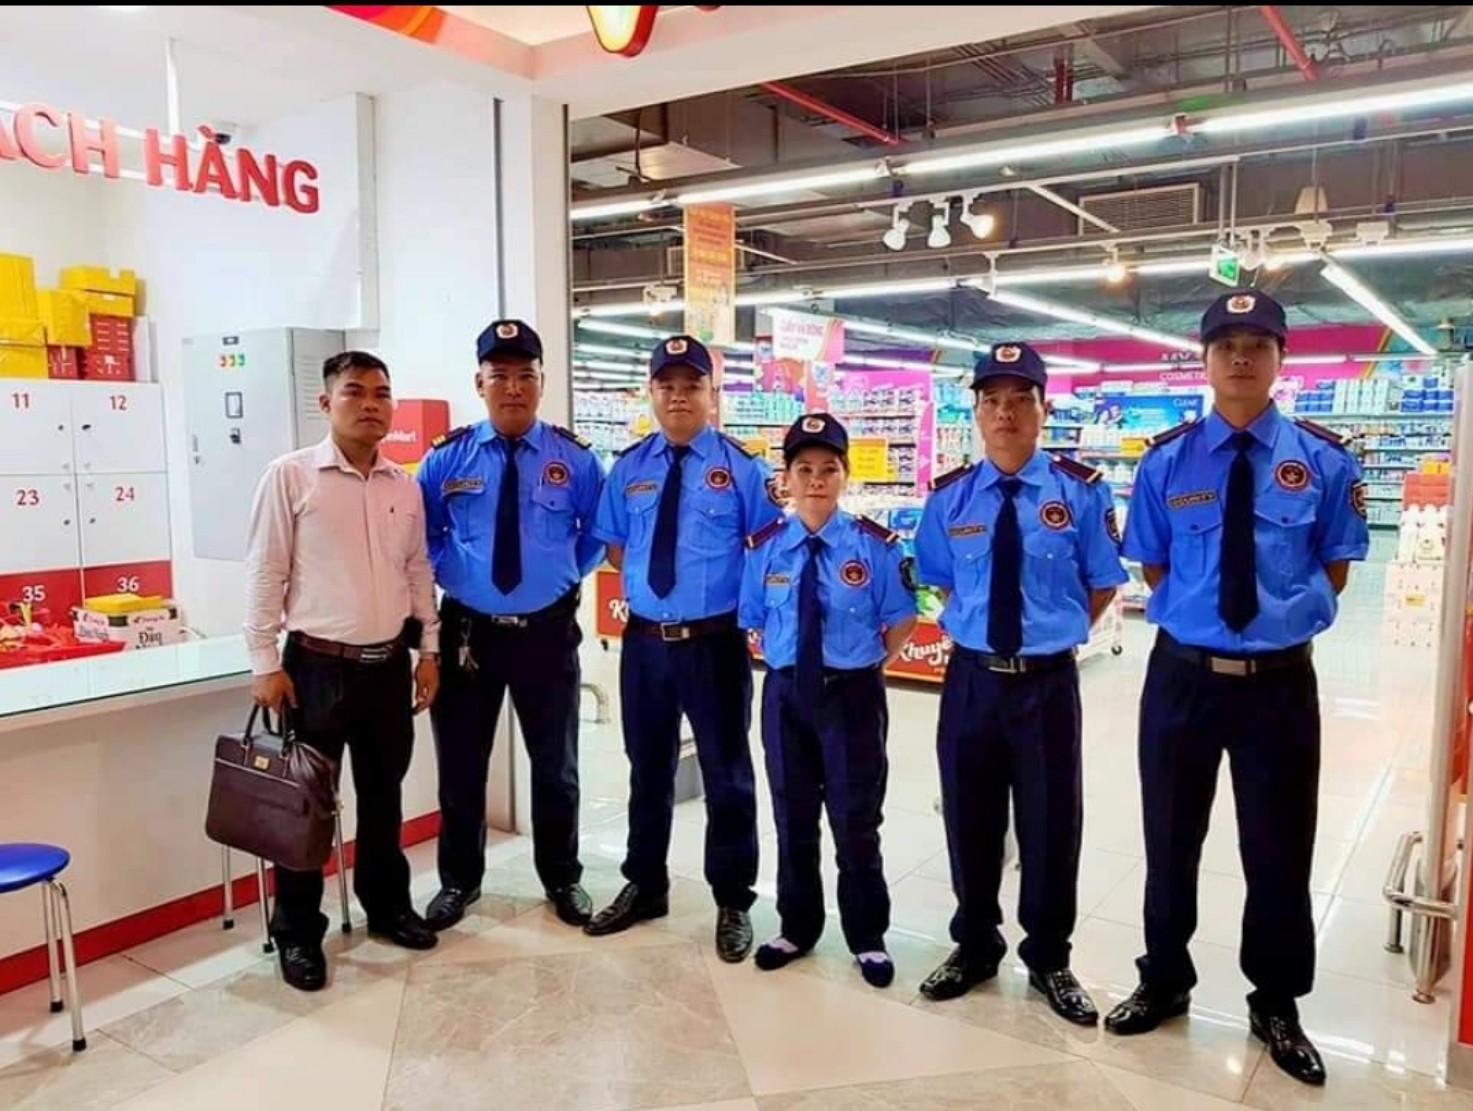 Mức giá dịch vụ bảo vệ tại Đà Nẵng hiện nay như thế nào là hợp lý